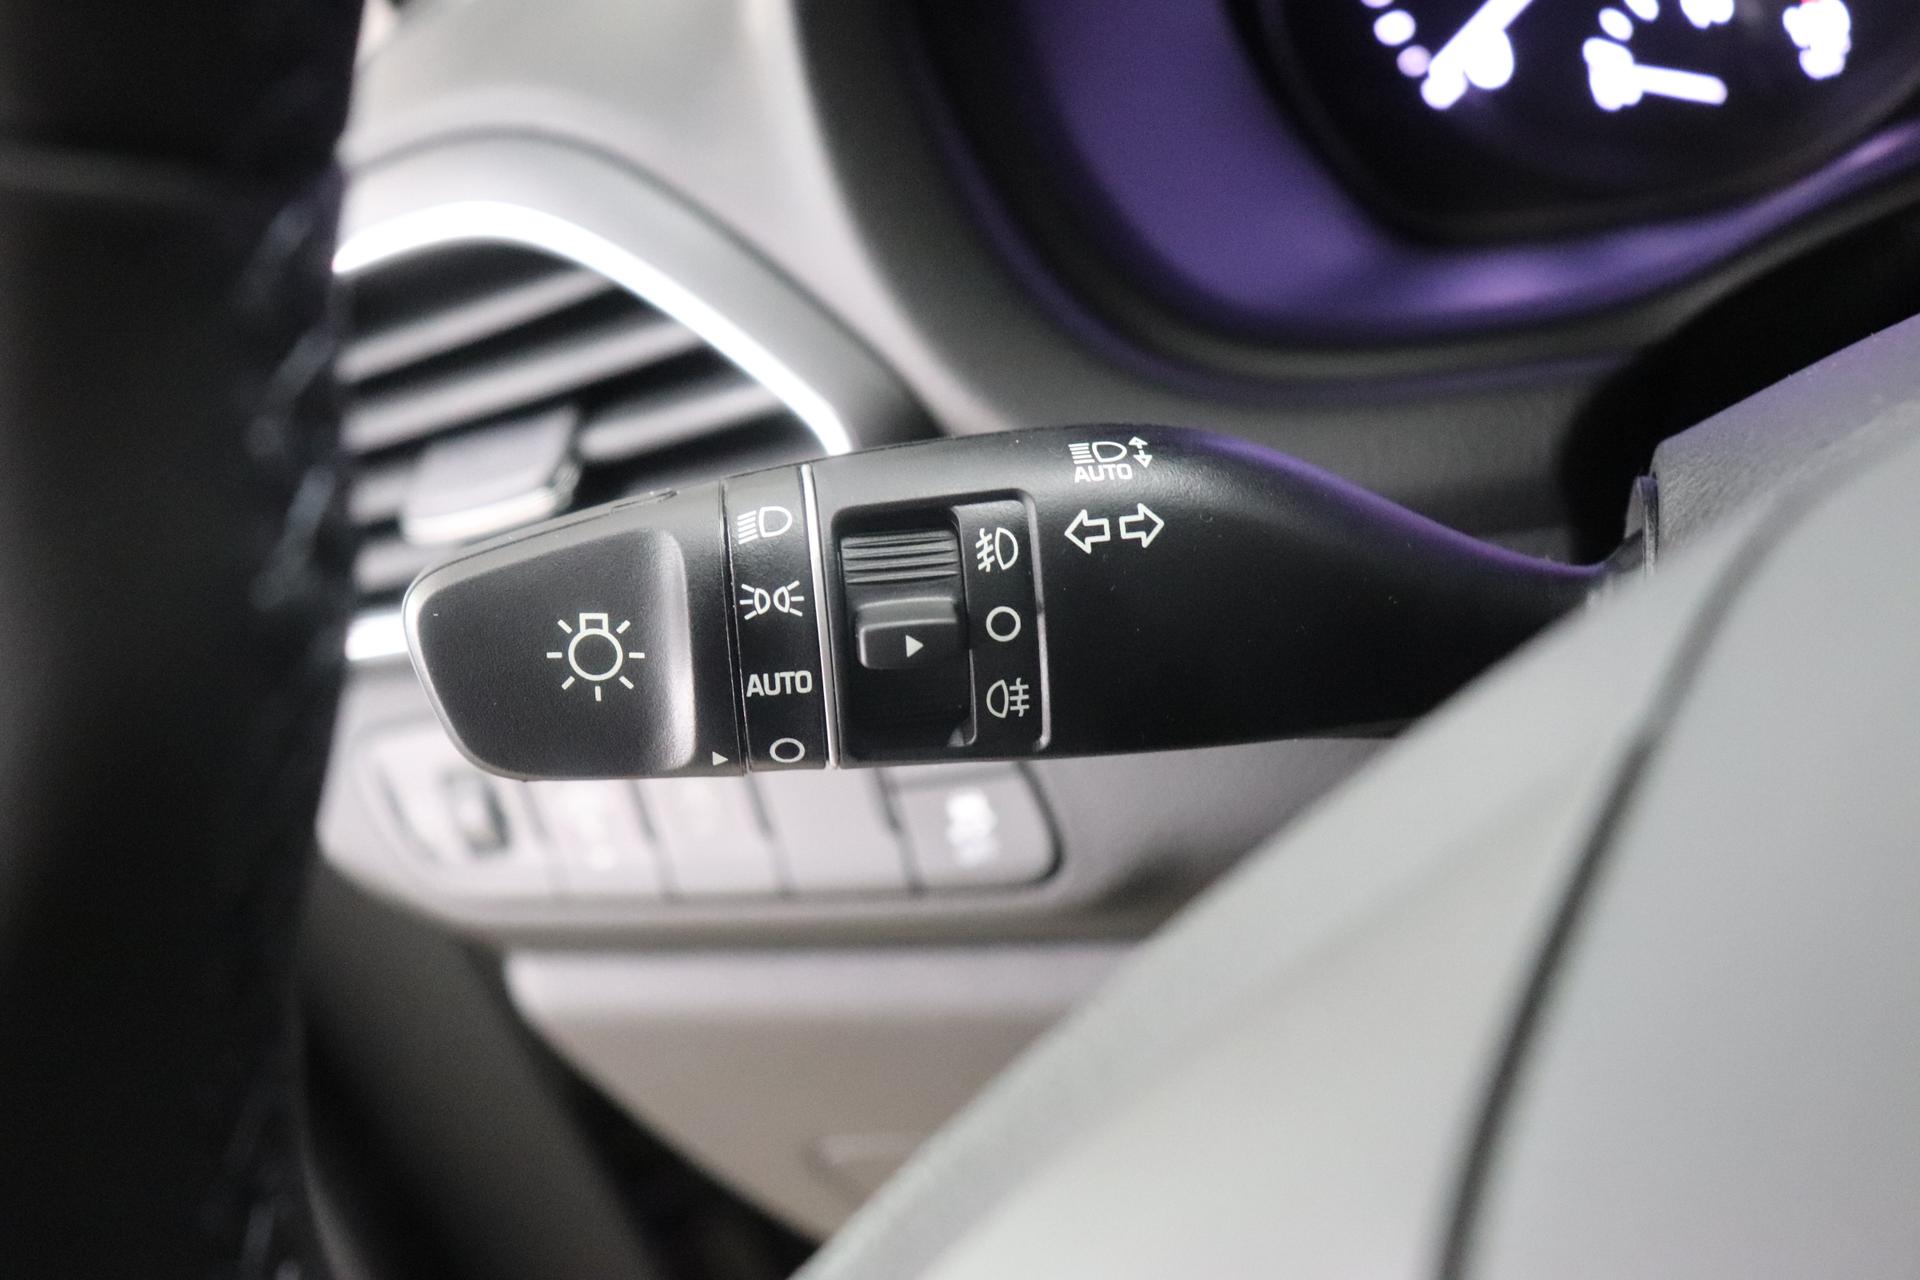 Hyundai i30 Comfort 1.0 T-GDi 7DCT FL, Klimaanlage, Sitzheizung,  Lederlenkrad, Radio DAB, Freisprecheinrichtung, Lichtsensor, Tempomat,  Einparkhilfe hinten, Nebelscheinwerfer, 16 Zoll Leichtmetallfelgen, uvm.  Reimport EU-Neuwagen günstig kaufen